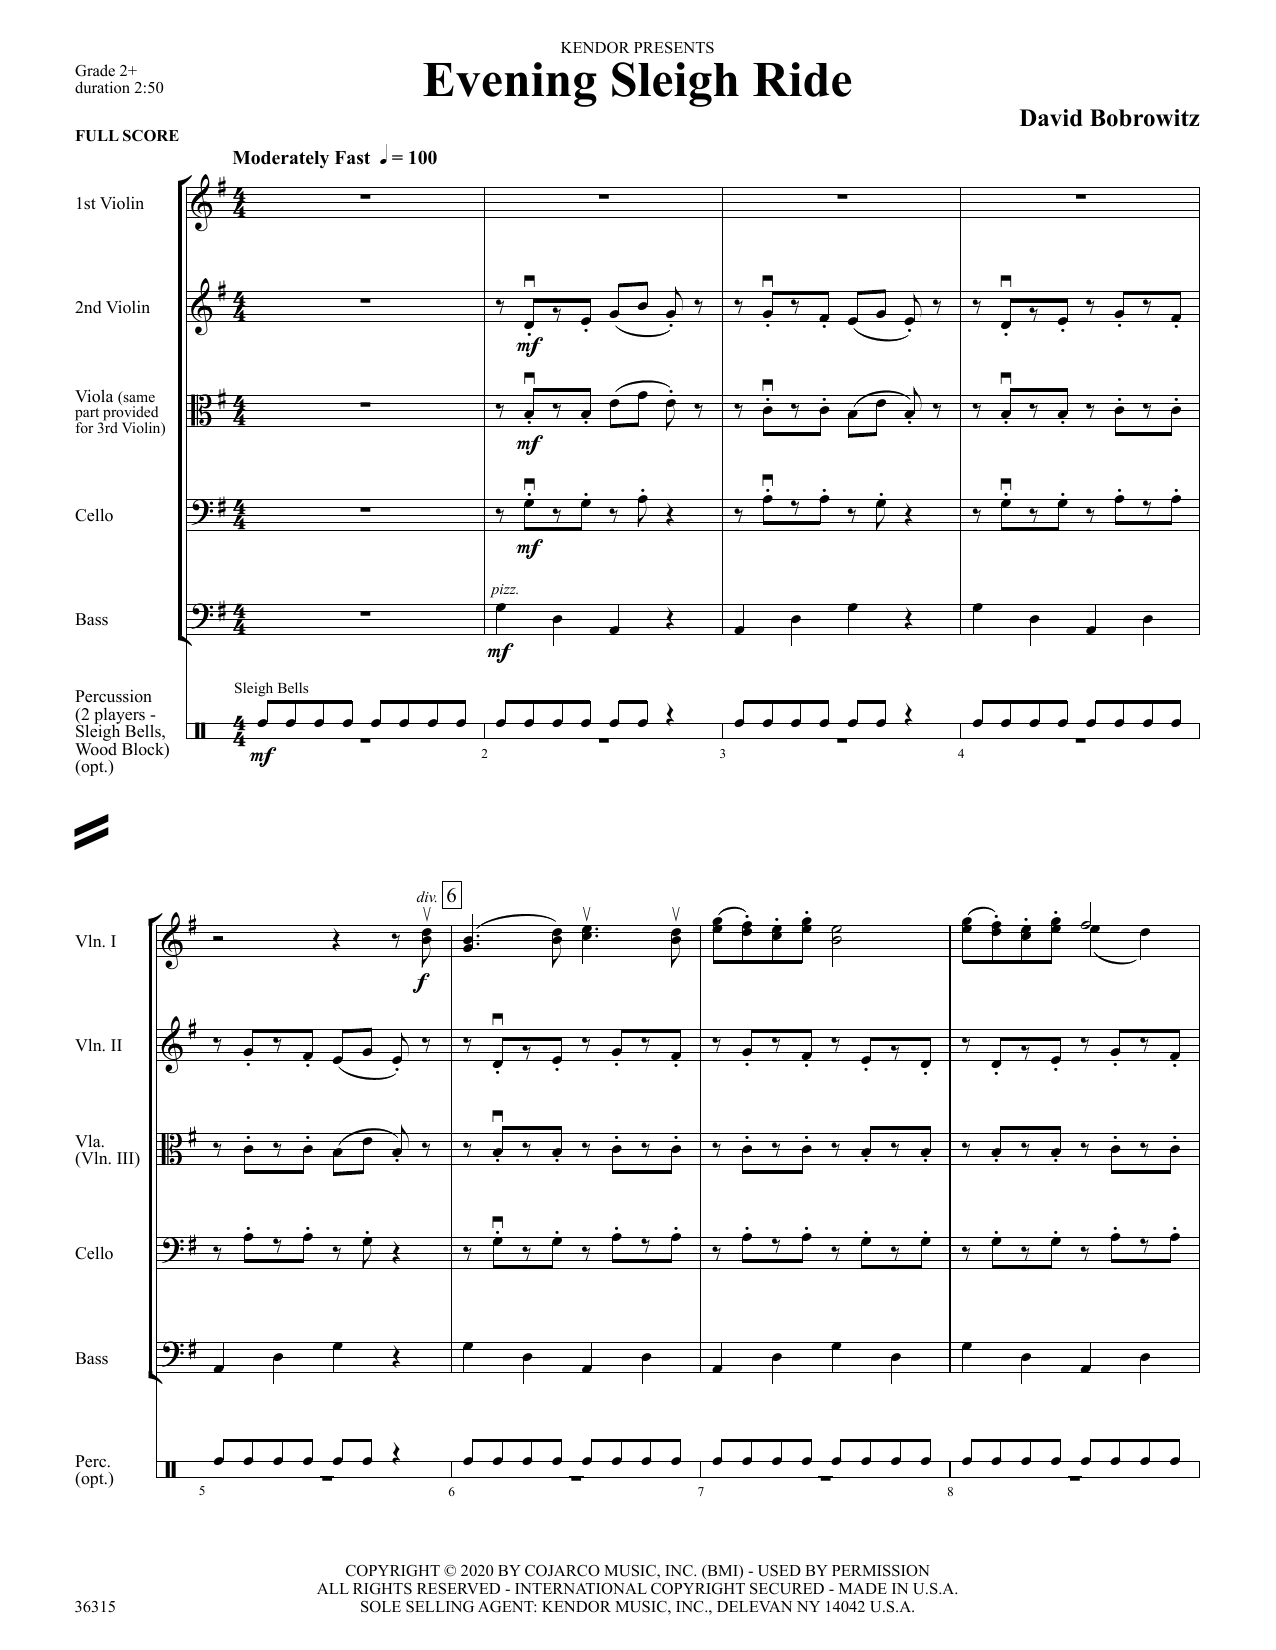 Download David Bobrowitz Evening Sleigh Ride - Full Score Sheet Music